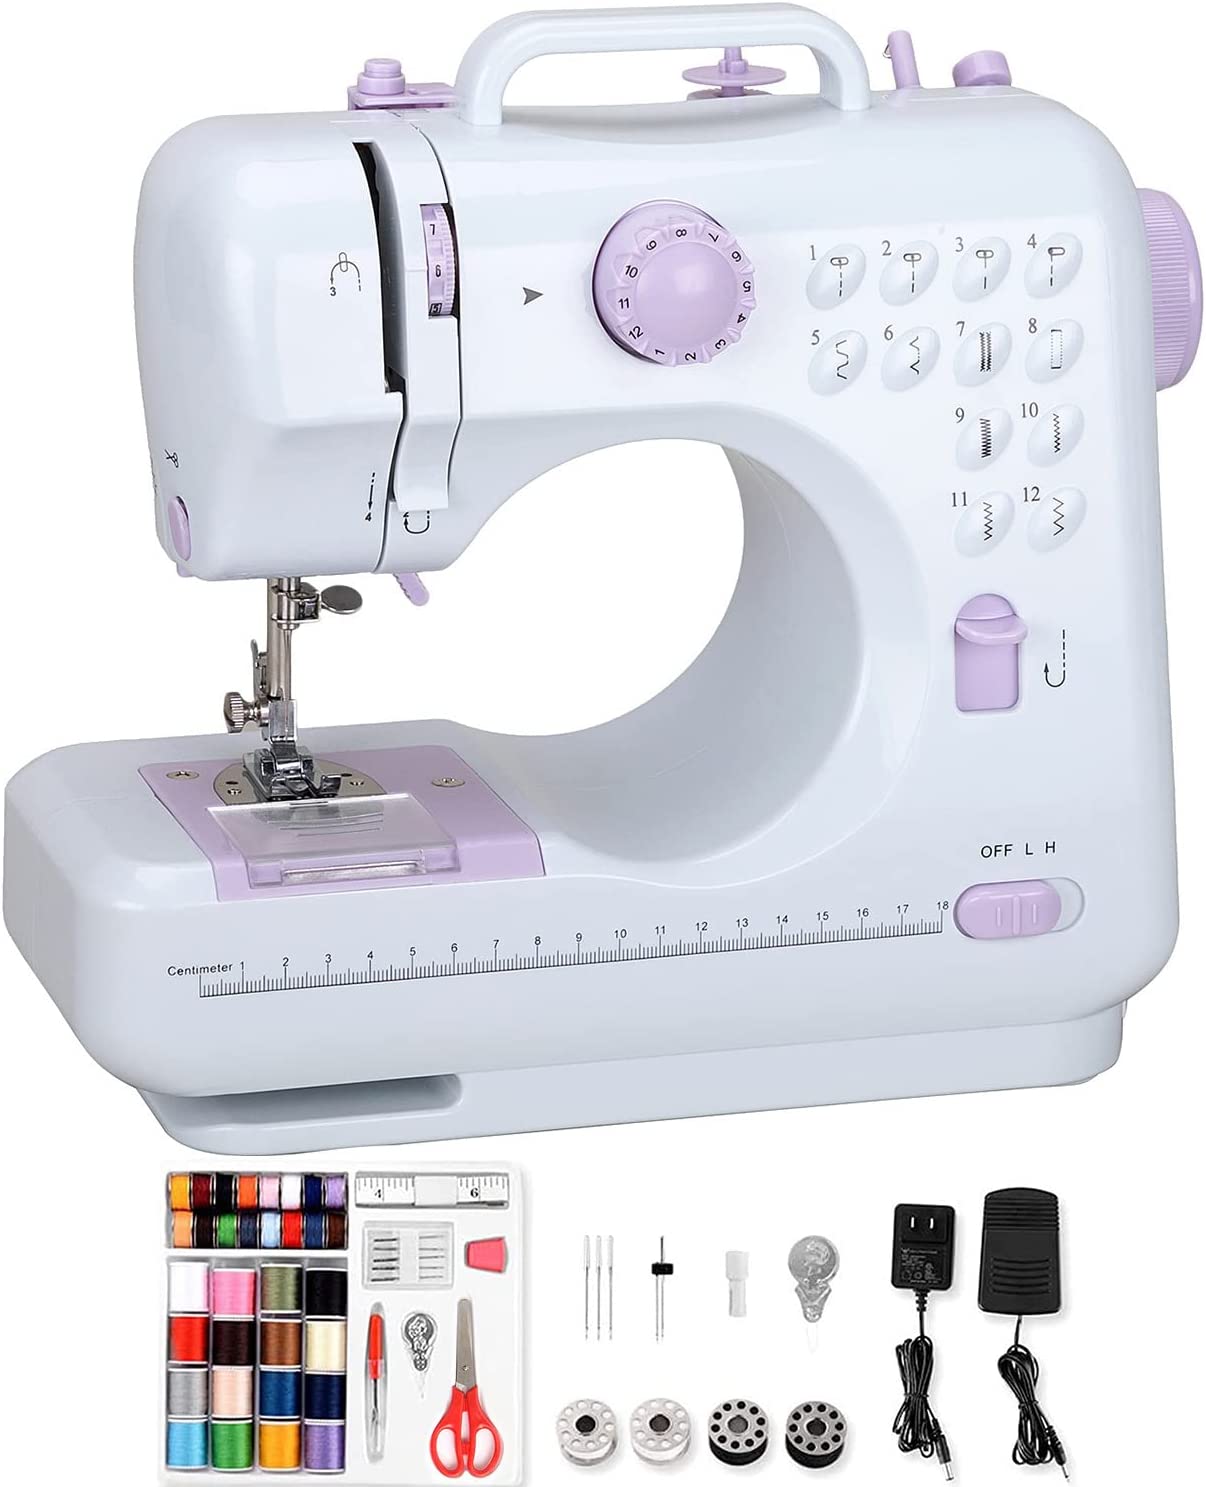 Hukunos Mini Sewing Machine